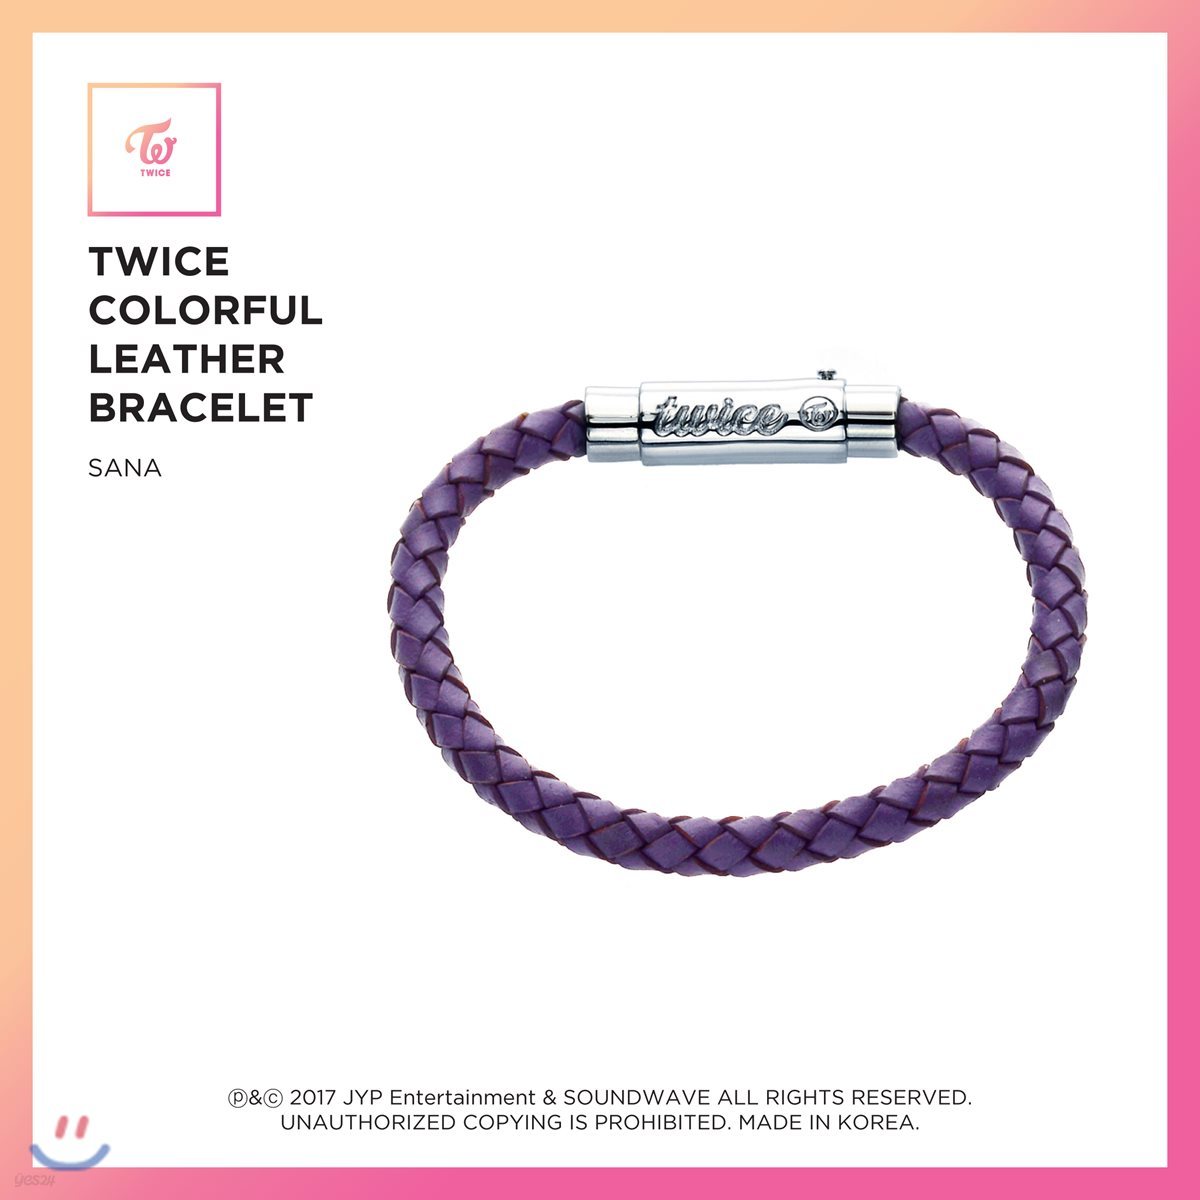 트와이스 (TWICE) - TWICE Colorful Leather Bracelet [Sana]